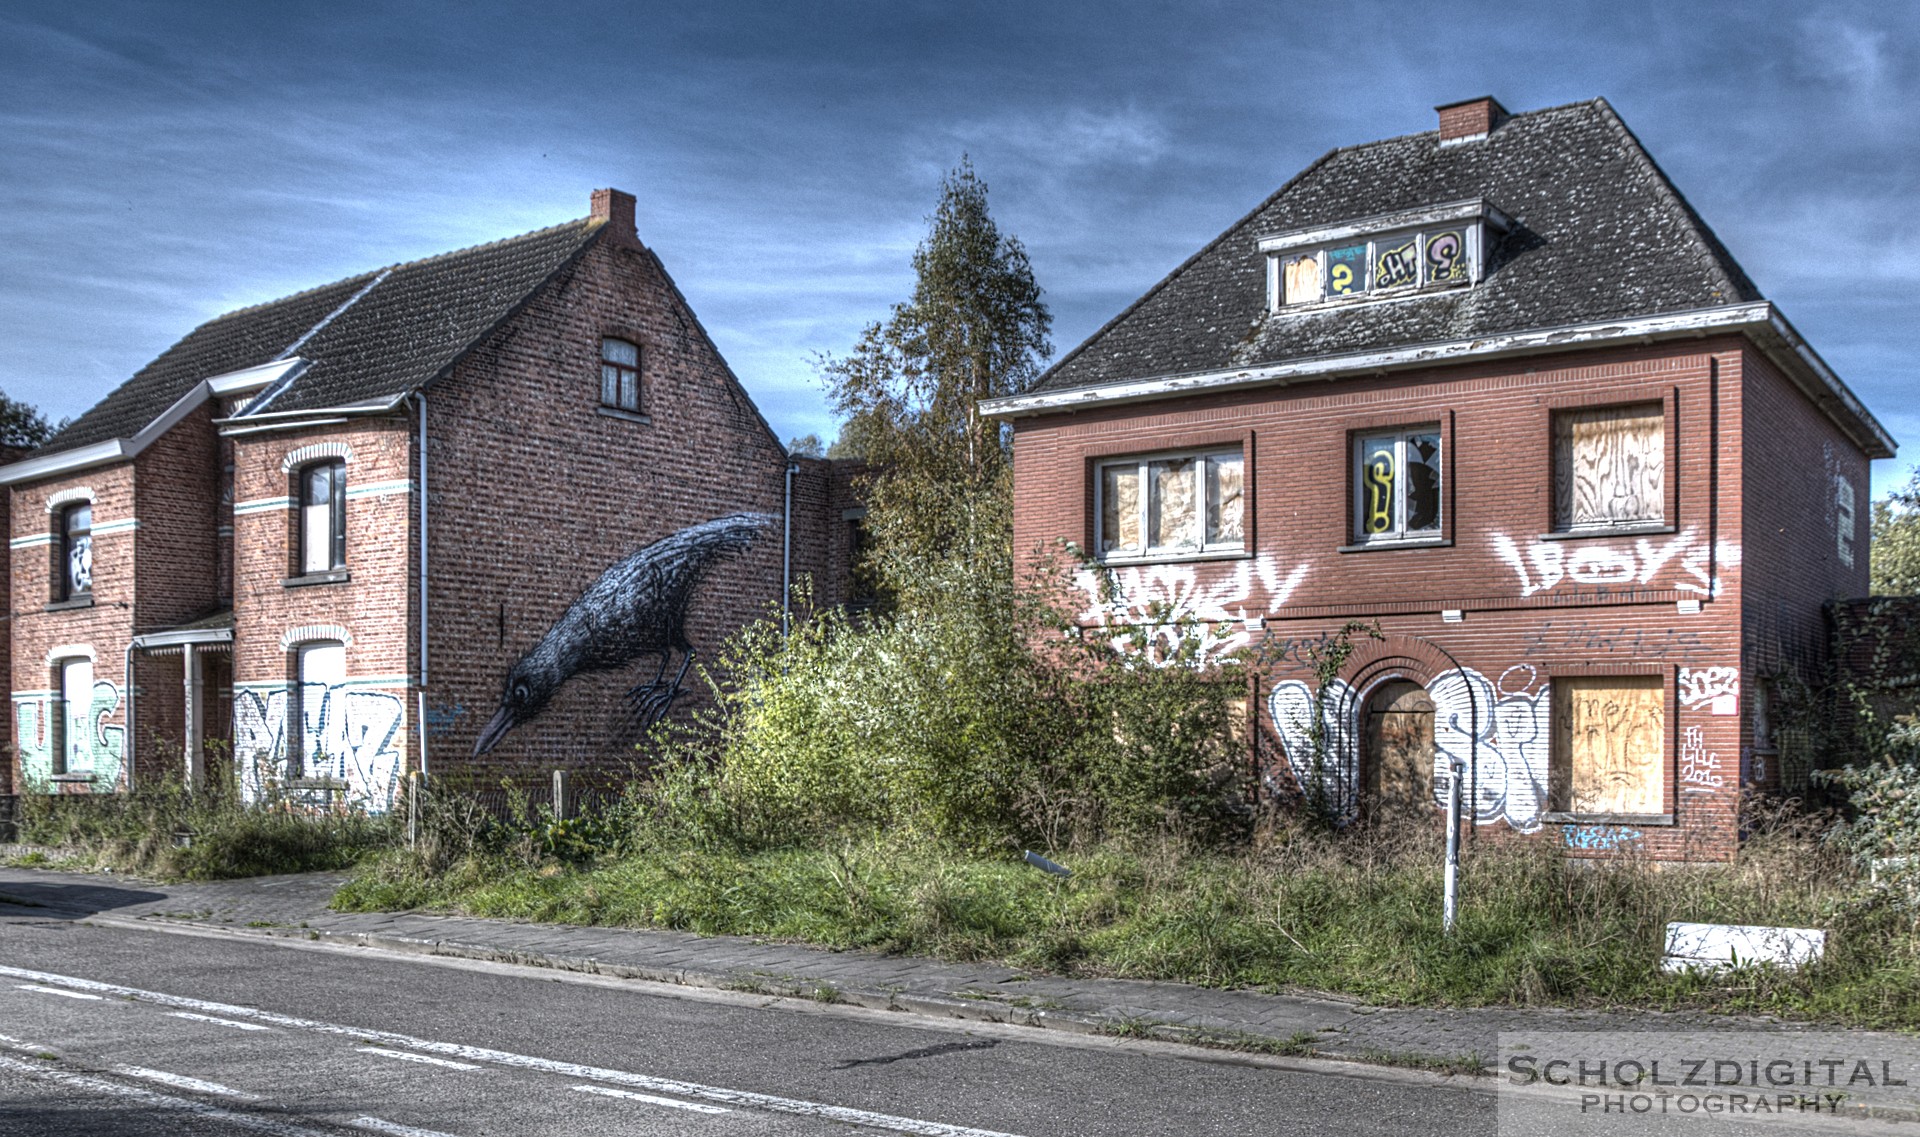 abandoned village